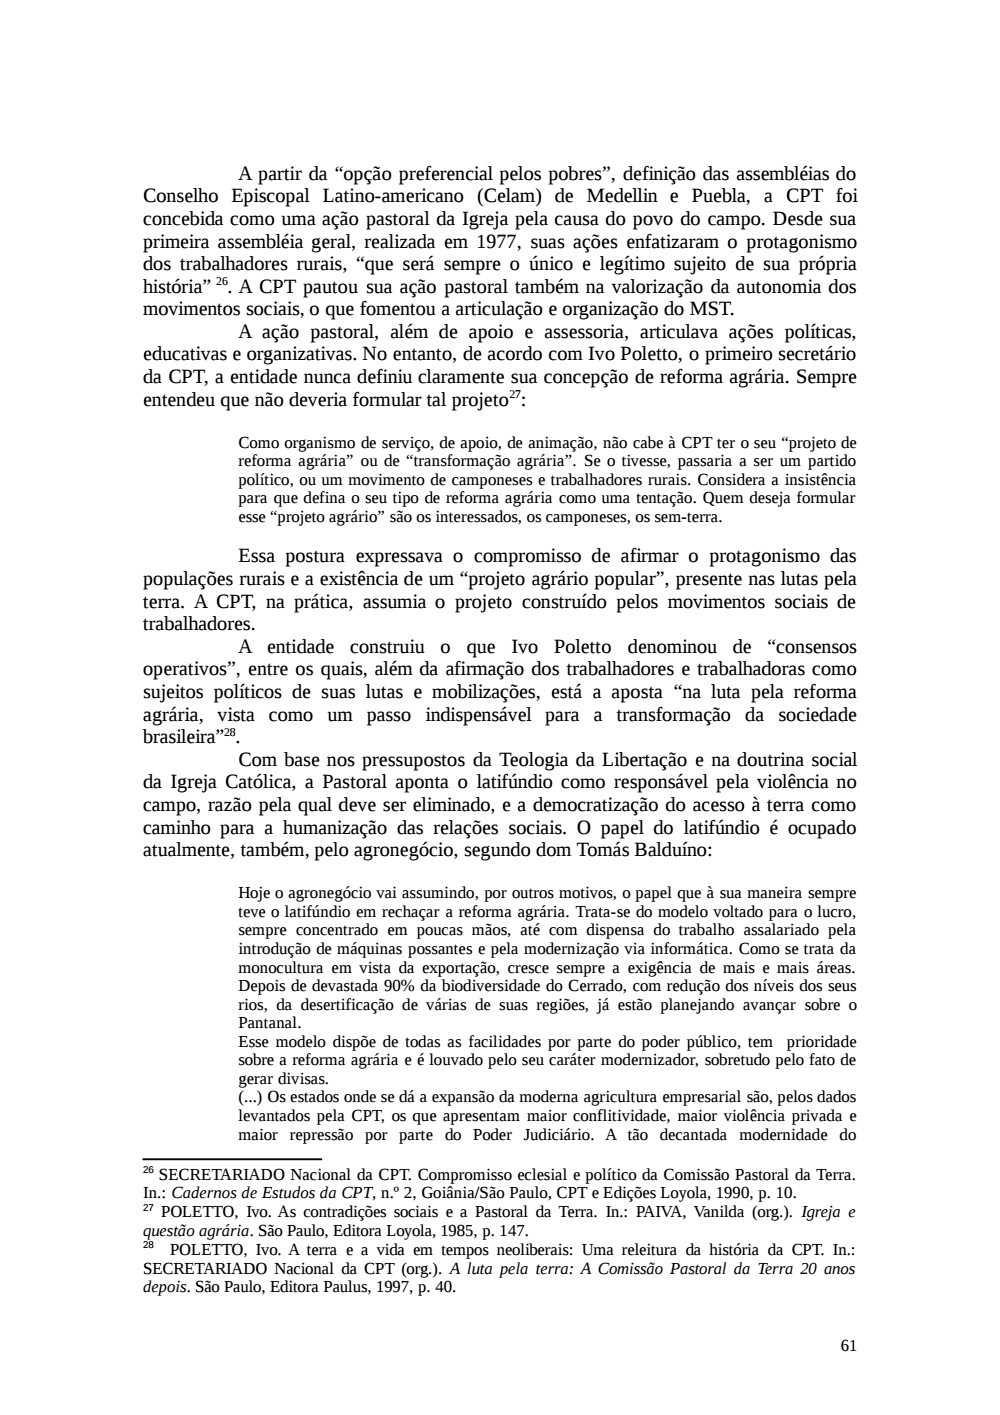 Page 61 from Relatório final da comissão